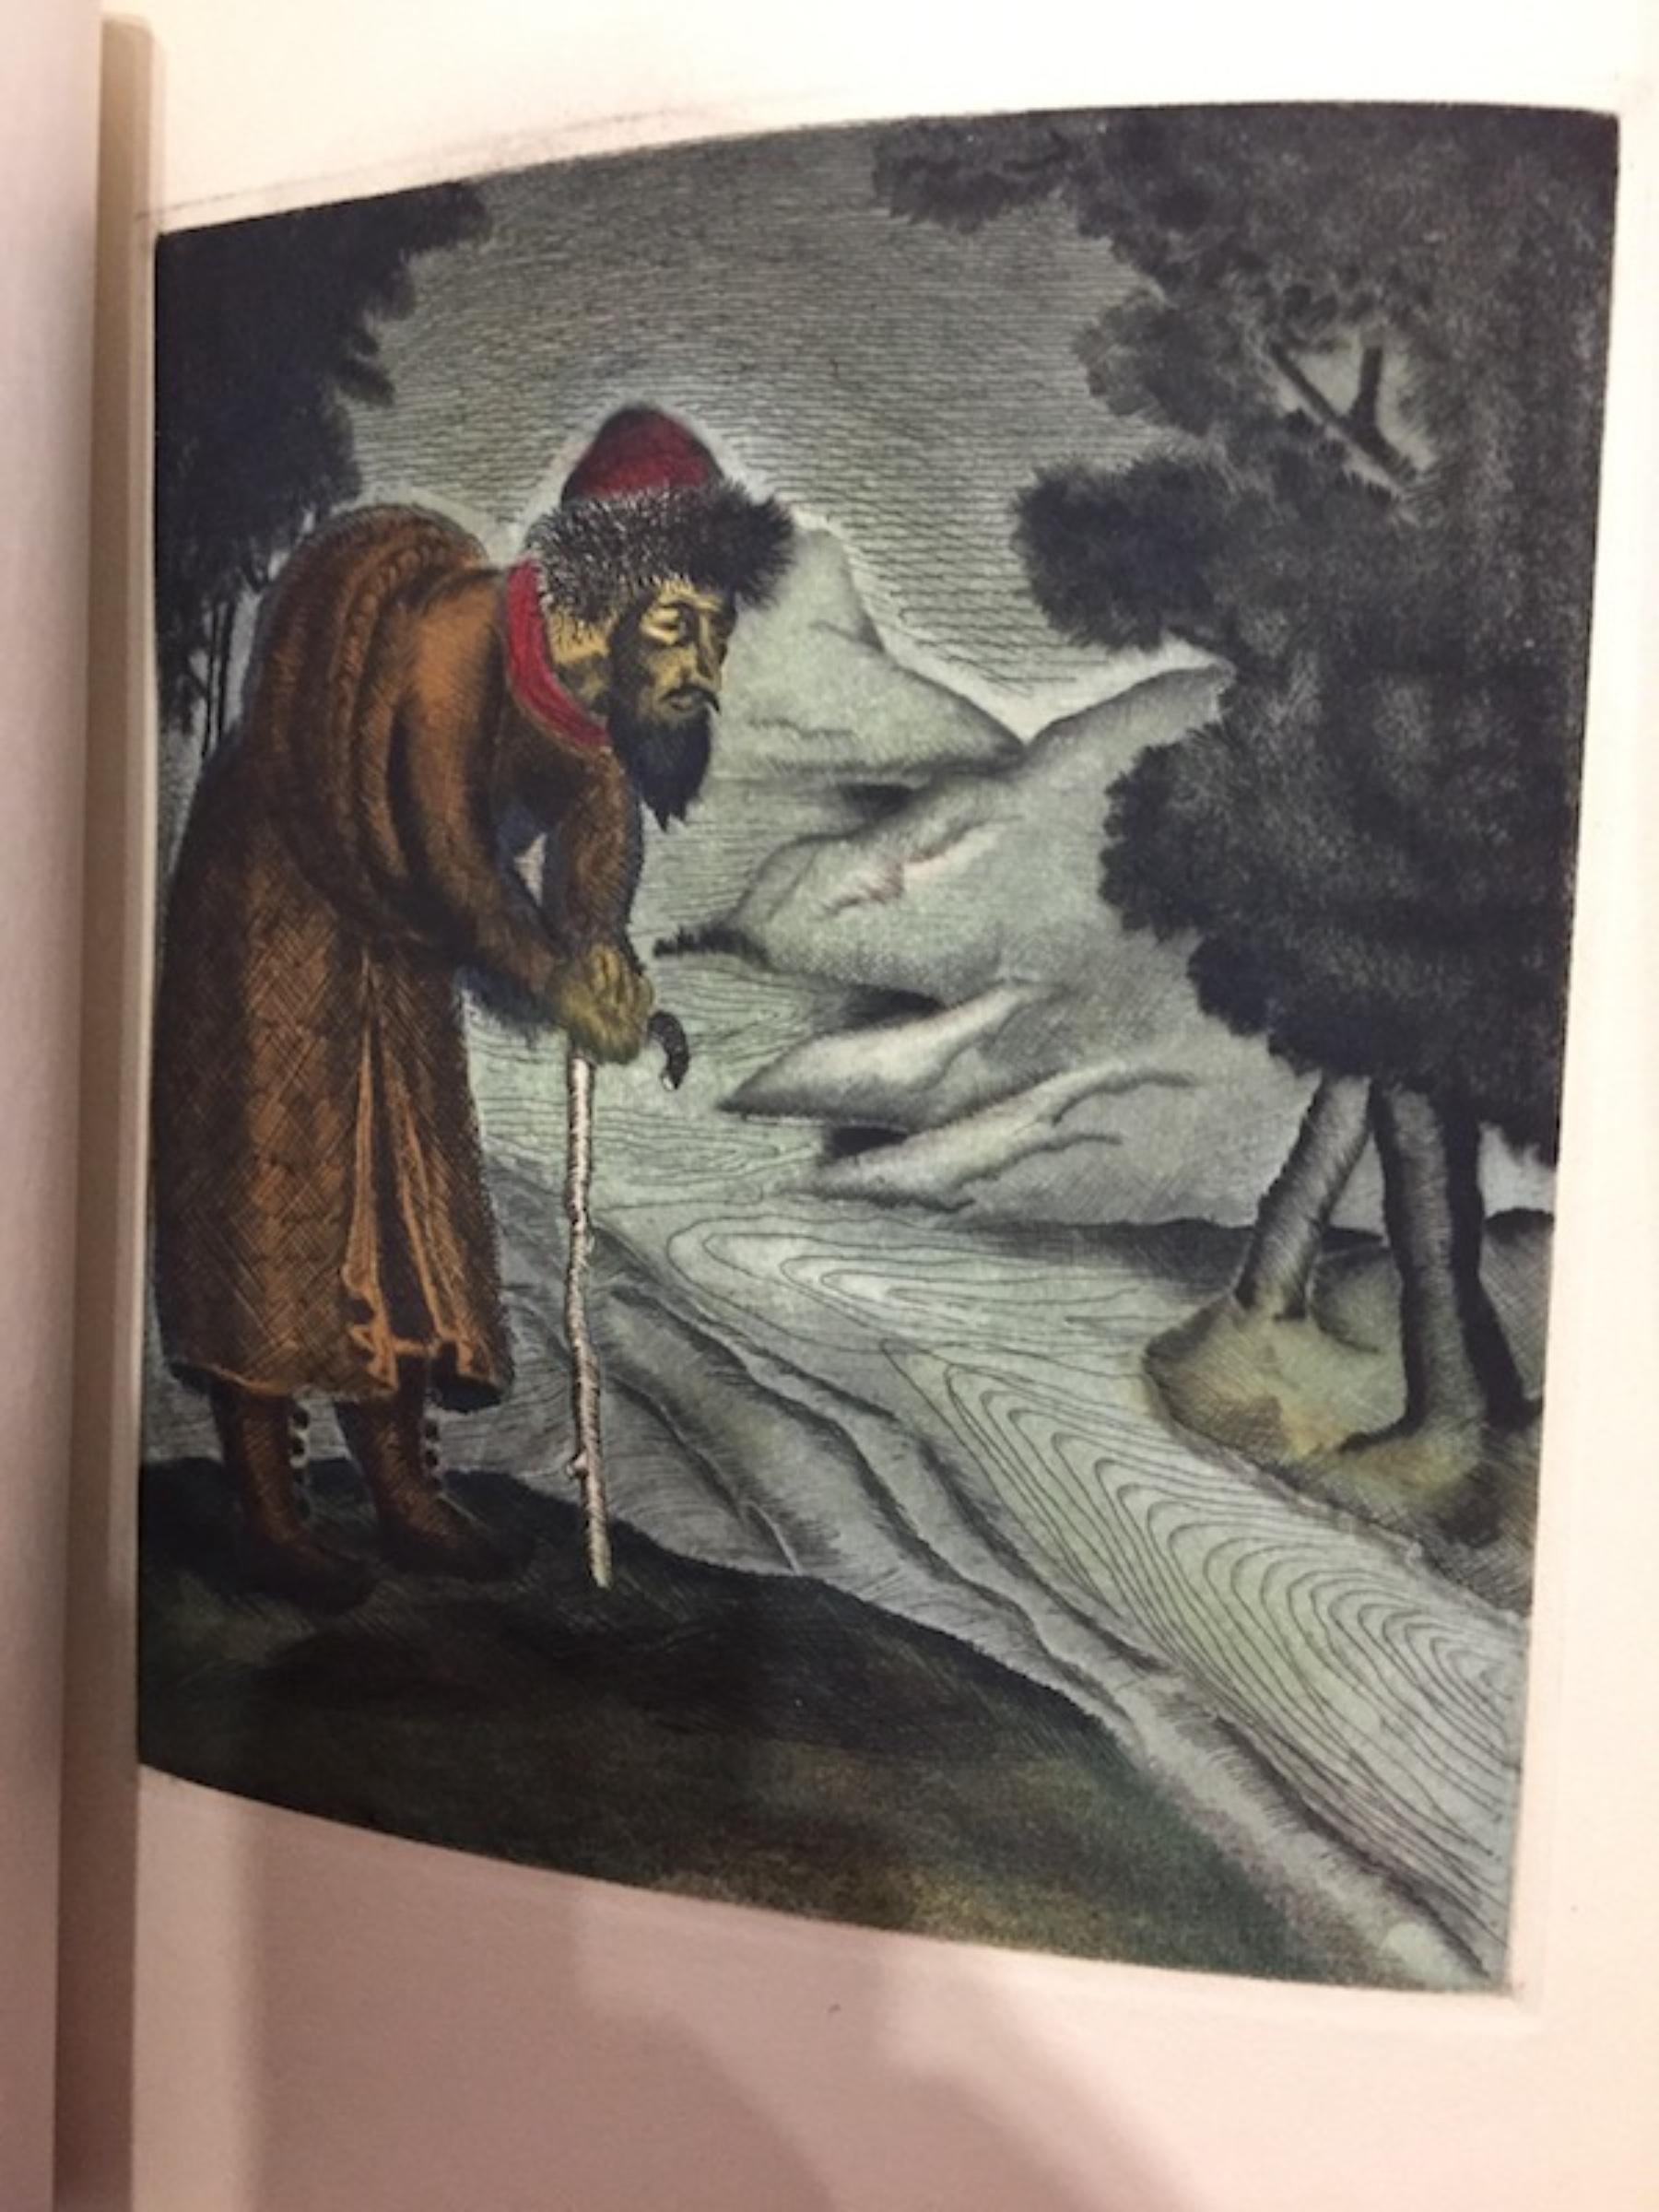 Le livre de Marco Polo gentilhomme venitien Illustrated by Marietta Lydis - 1932 For Sale 1